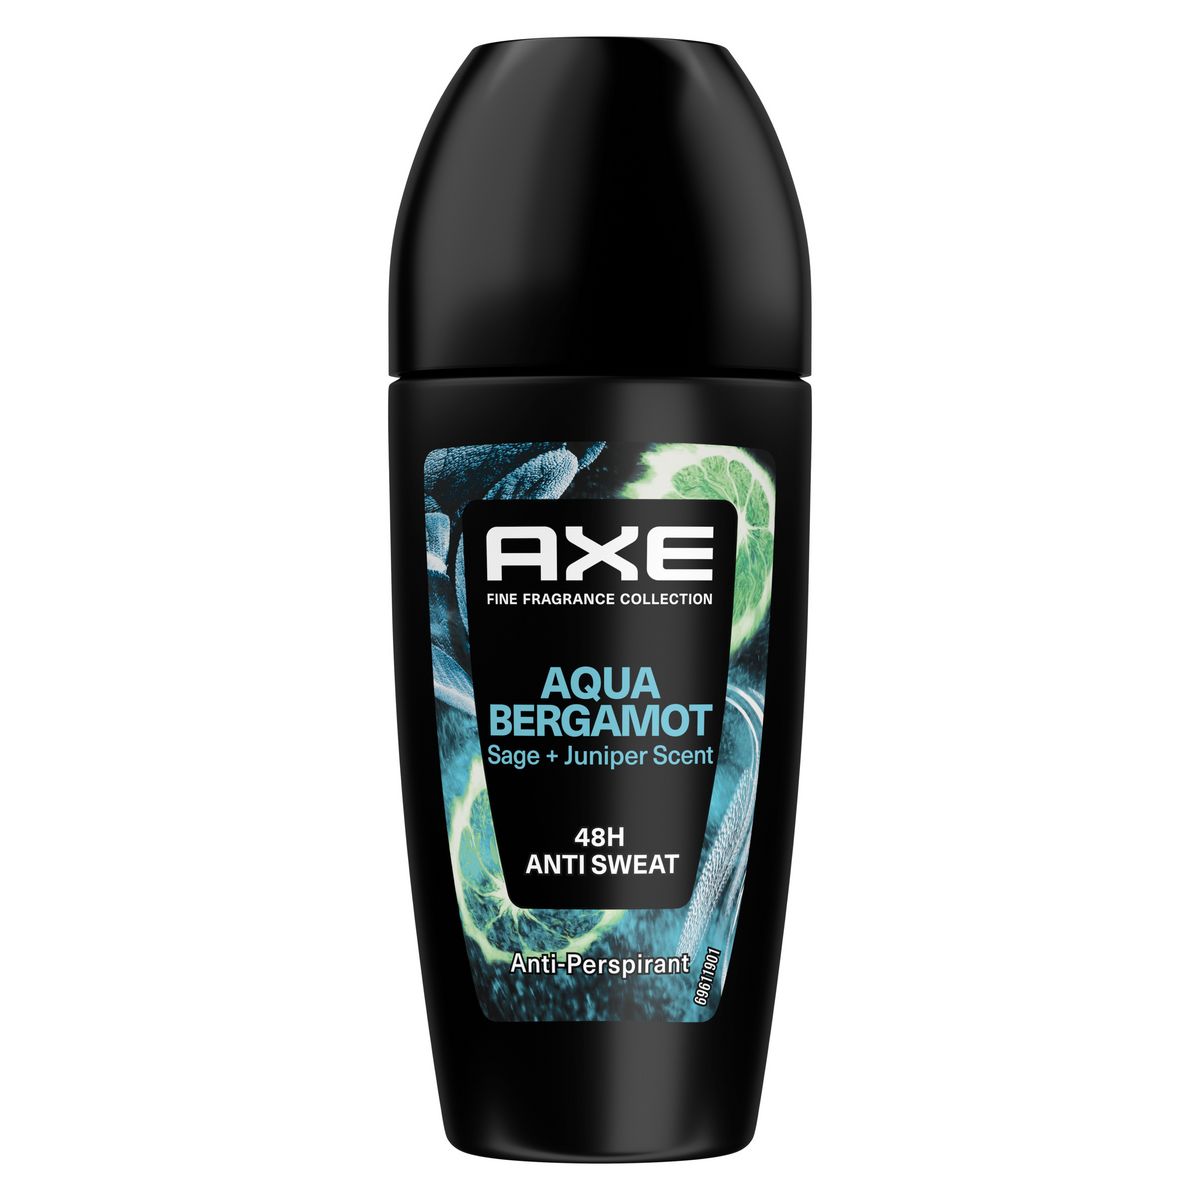 AXE Déodorant bille Aqua Bergamot antiperspirant 48h 50ml